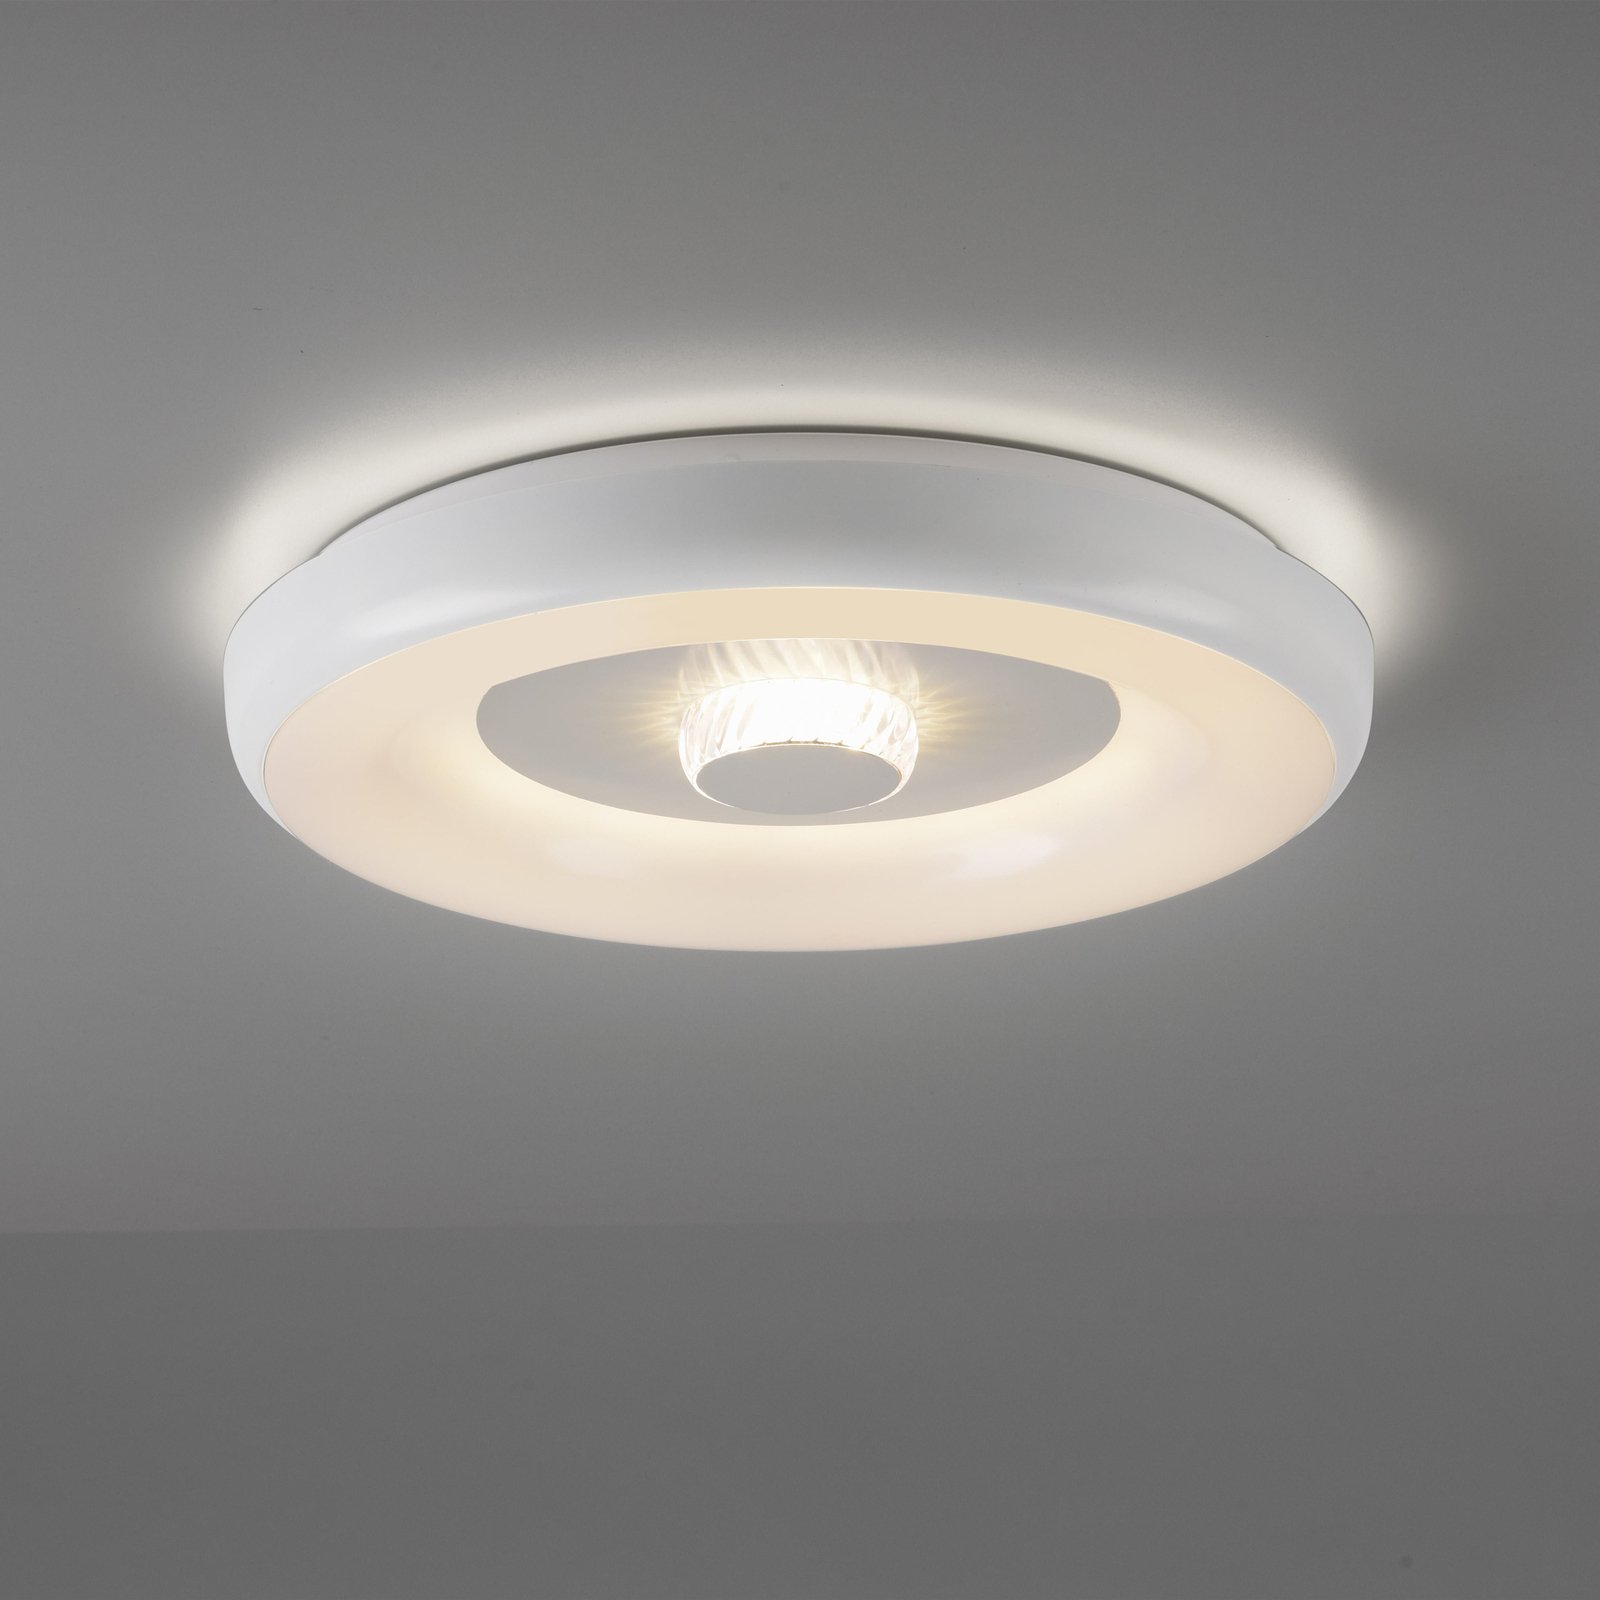 JUST LIGHT. LED ceiling light LOLAsmart Vertigo, white